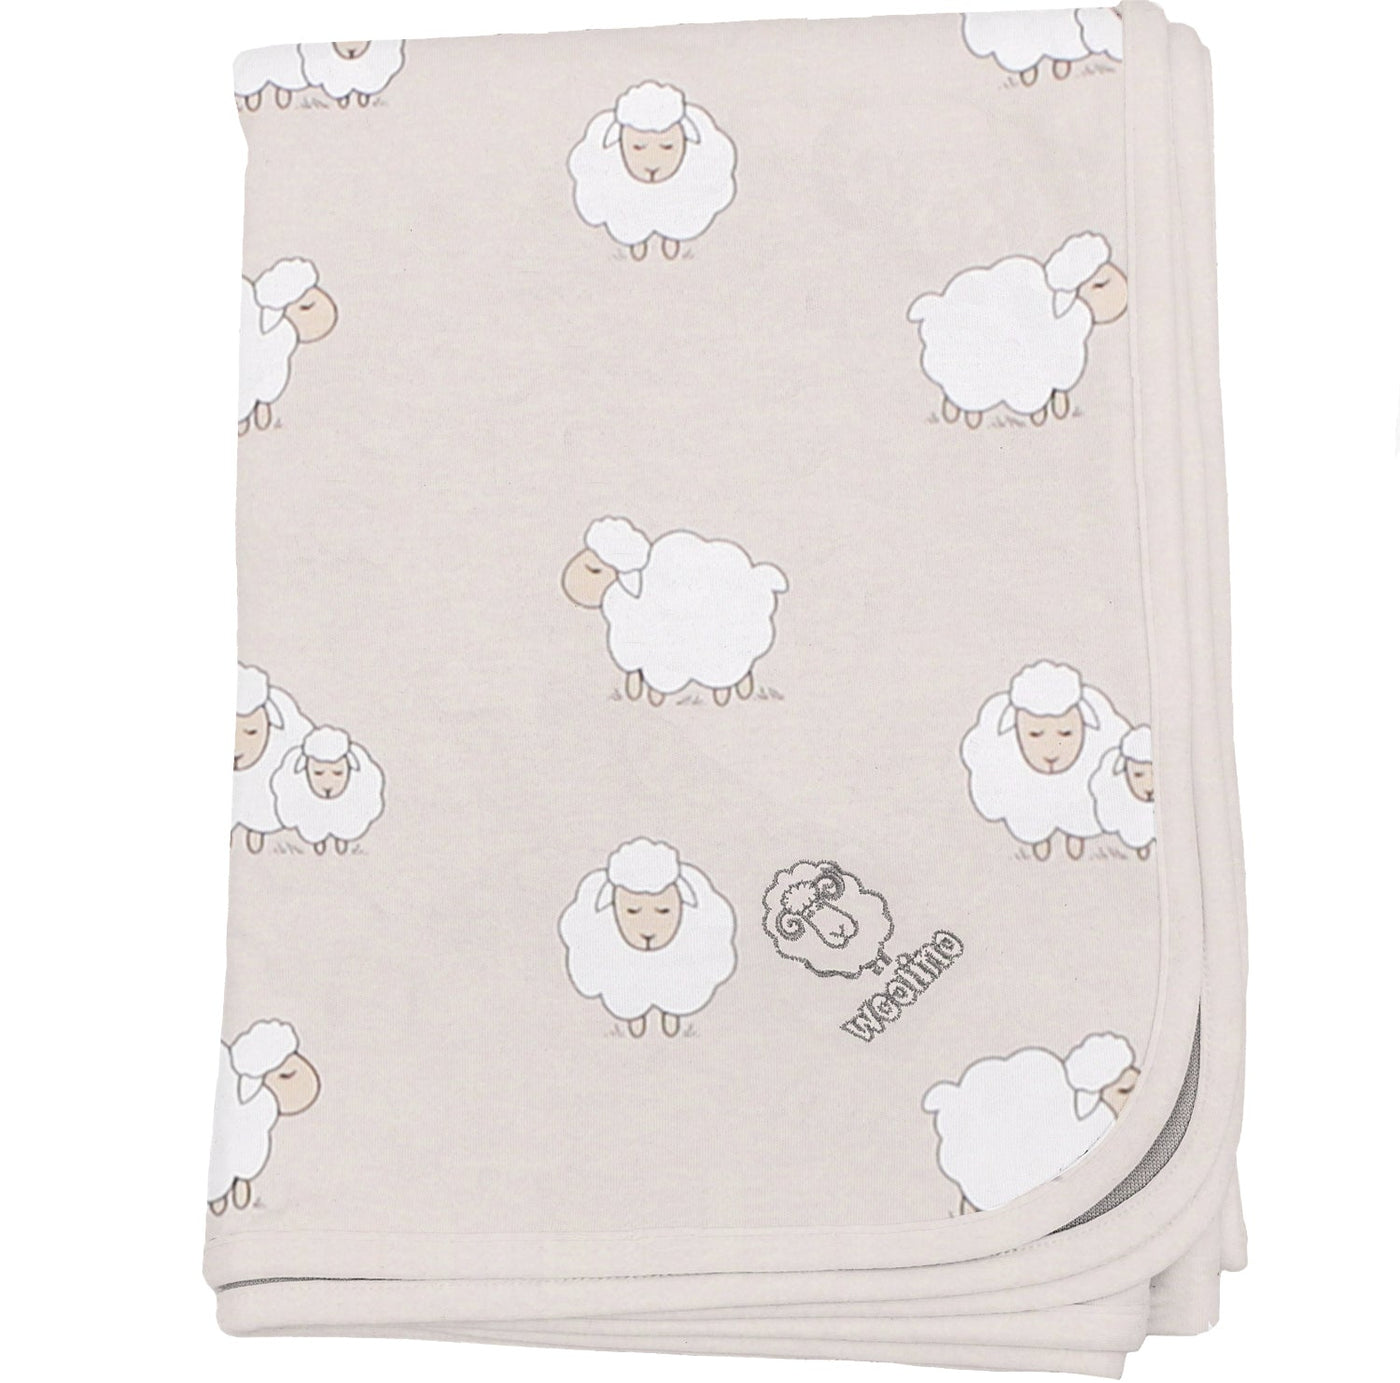 Imperfect Toddler Blanket, 4 Season® Merino Wool & Organic Cotton Blanket, 52.5" x 40", Sheep